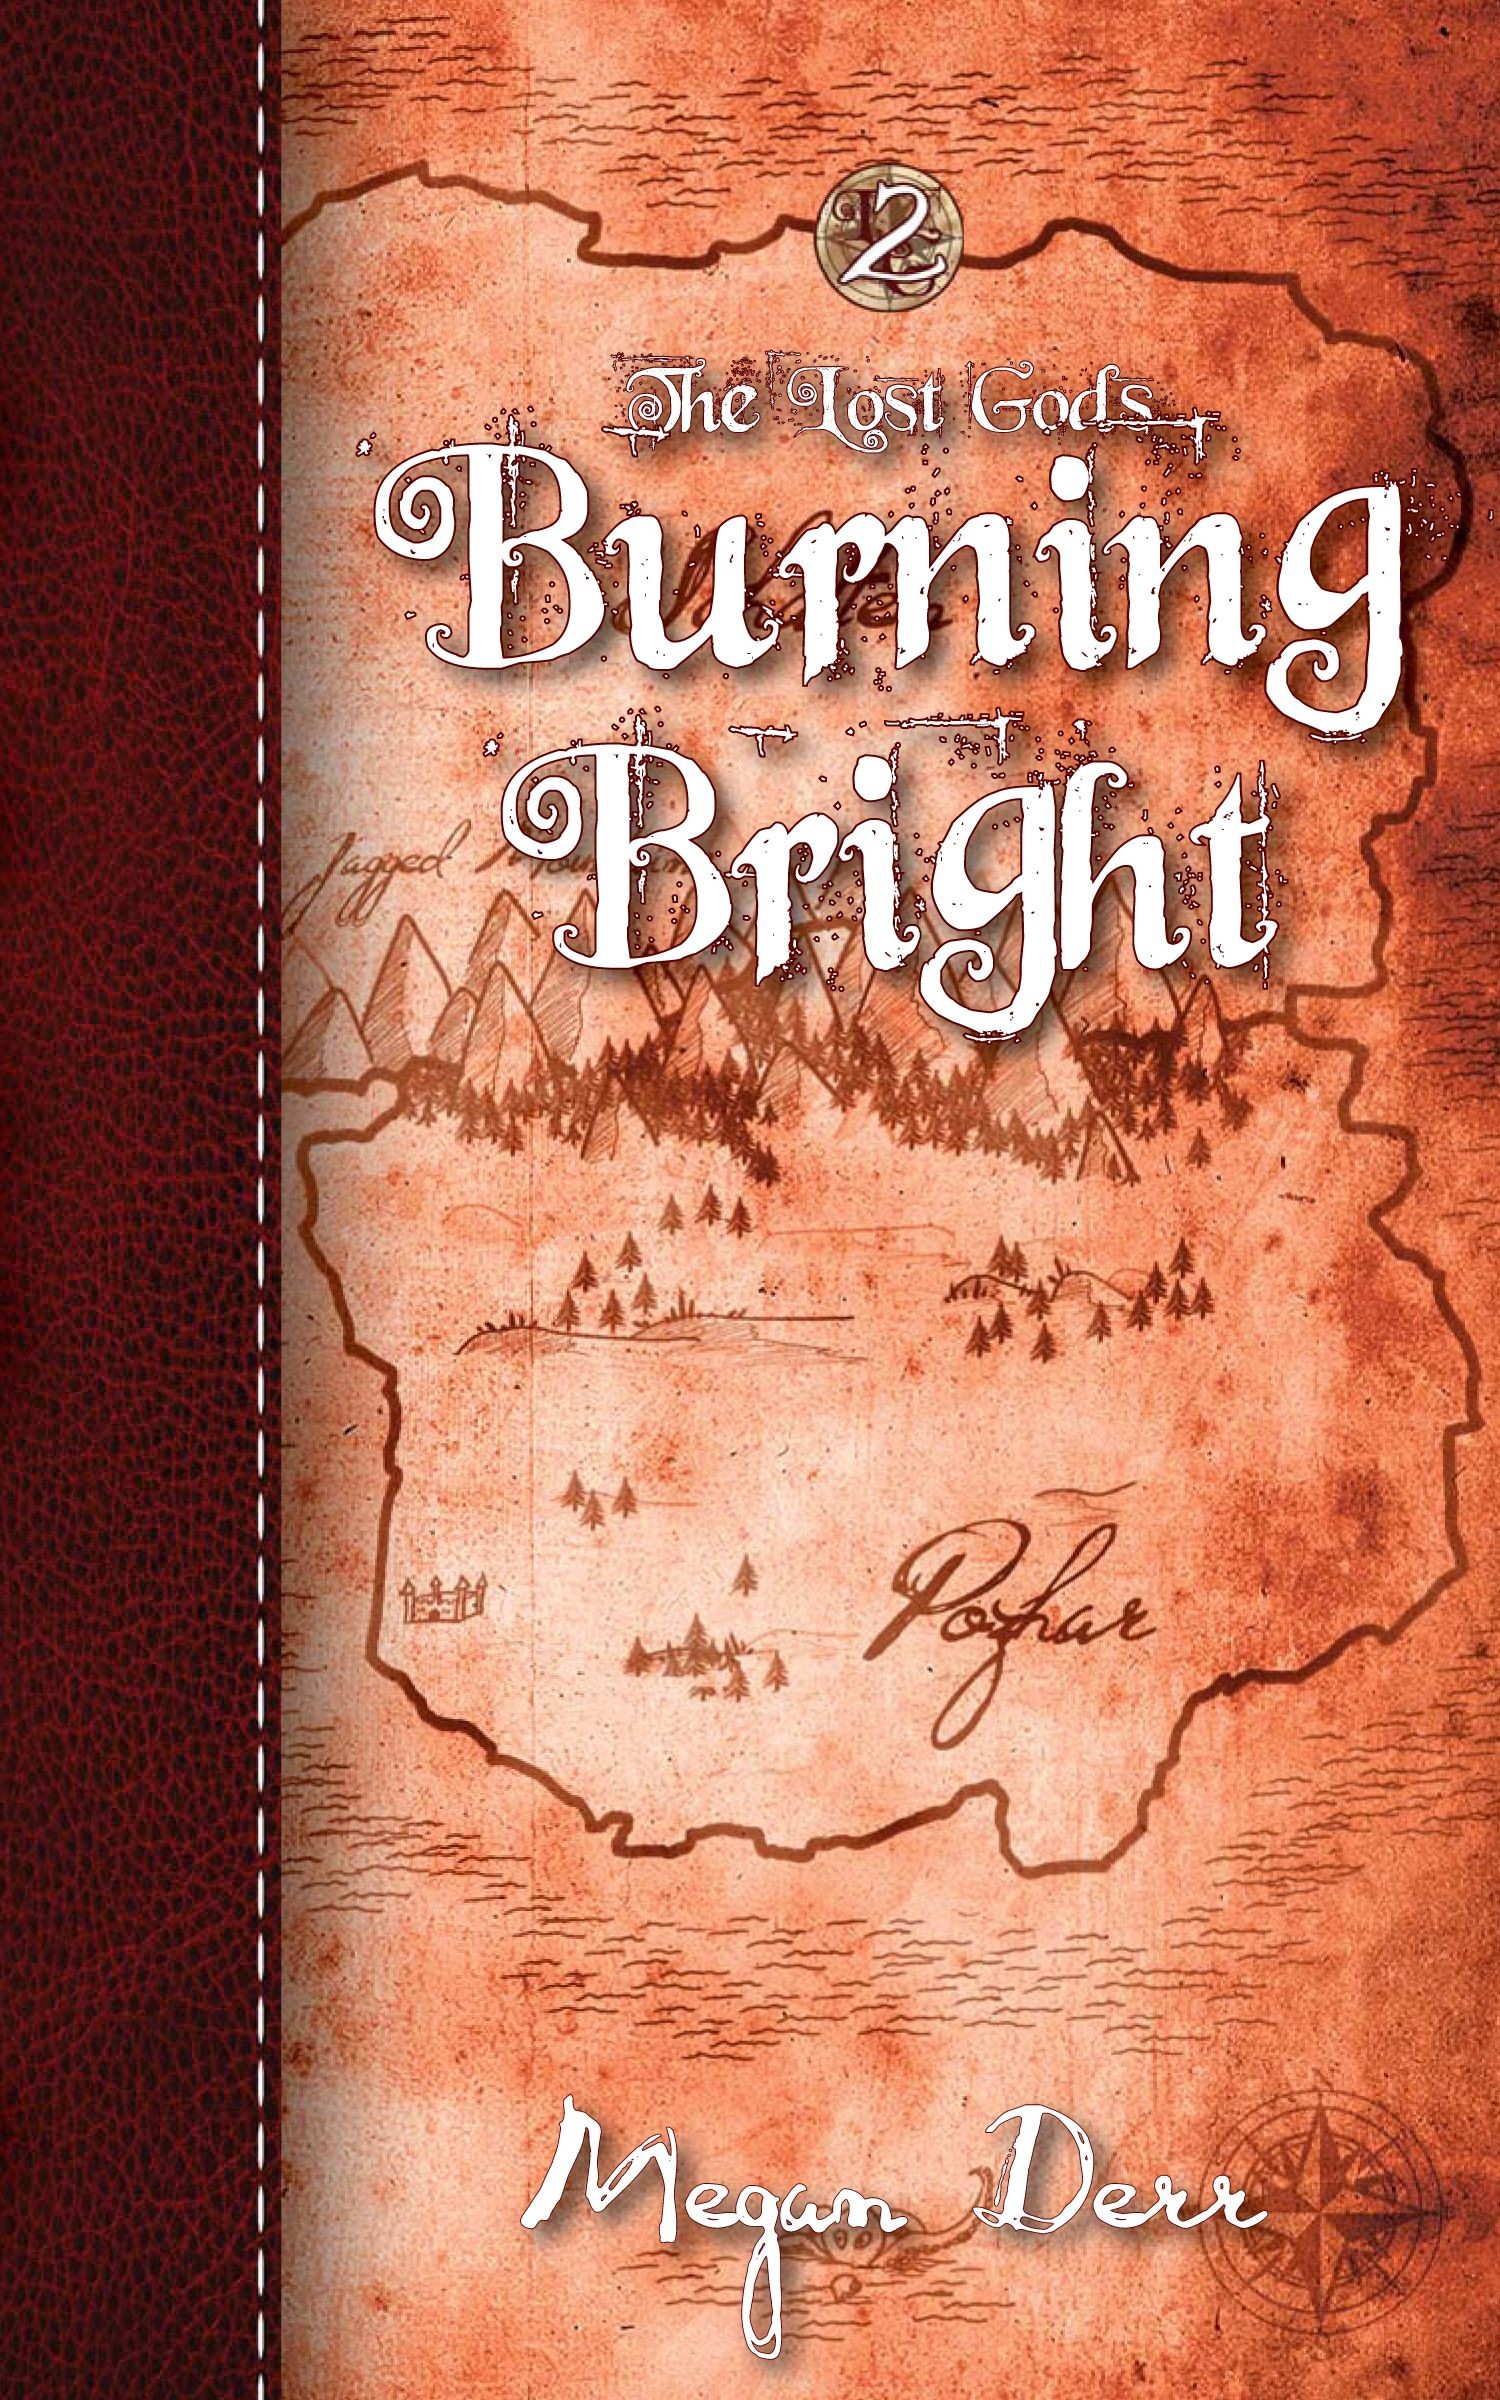 Burning Bright (2012)